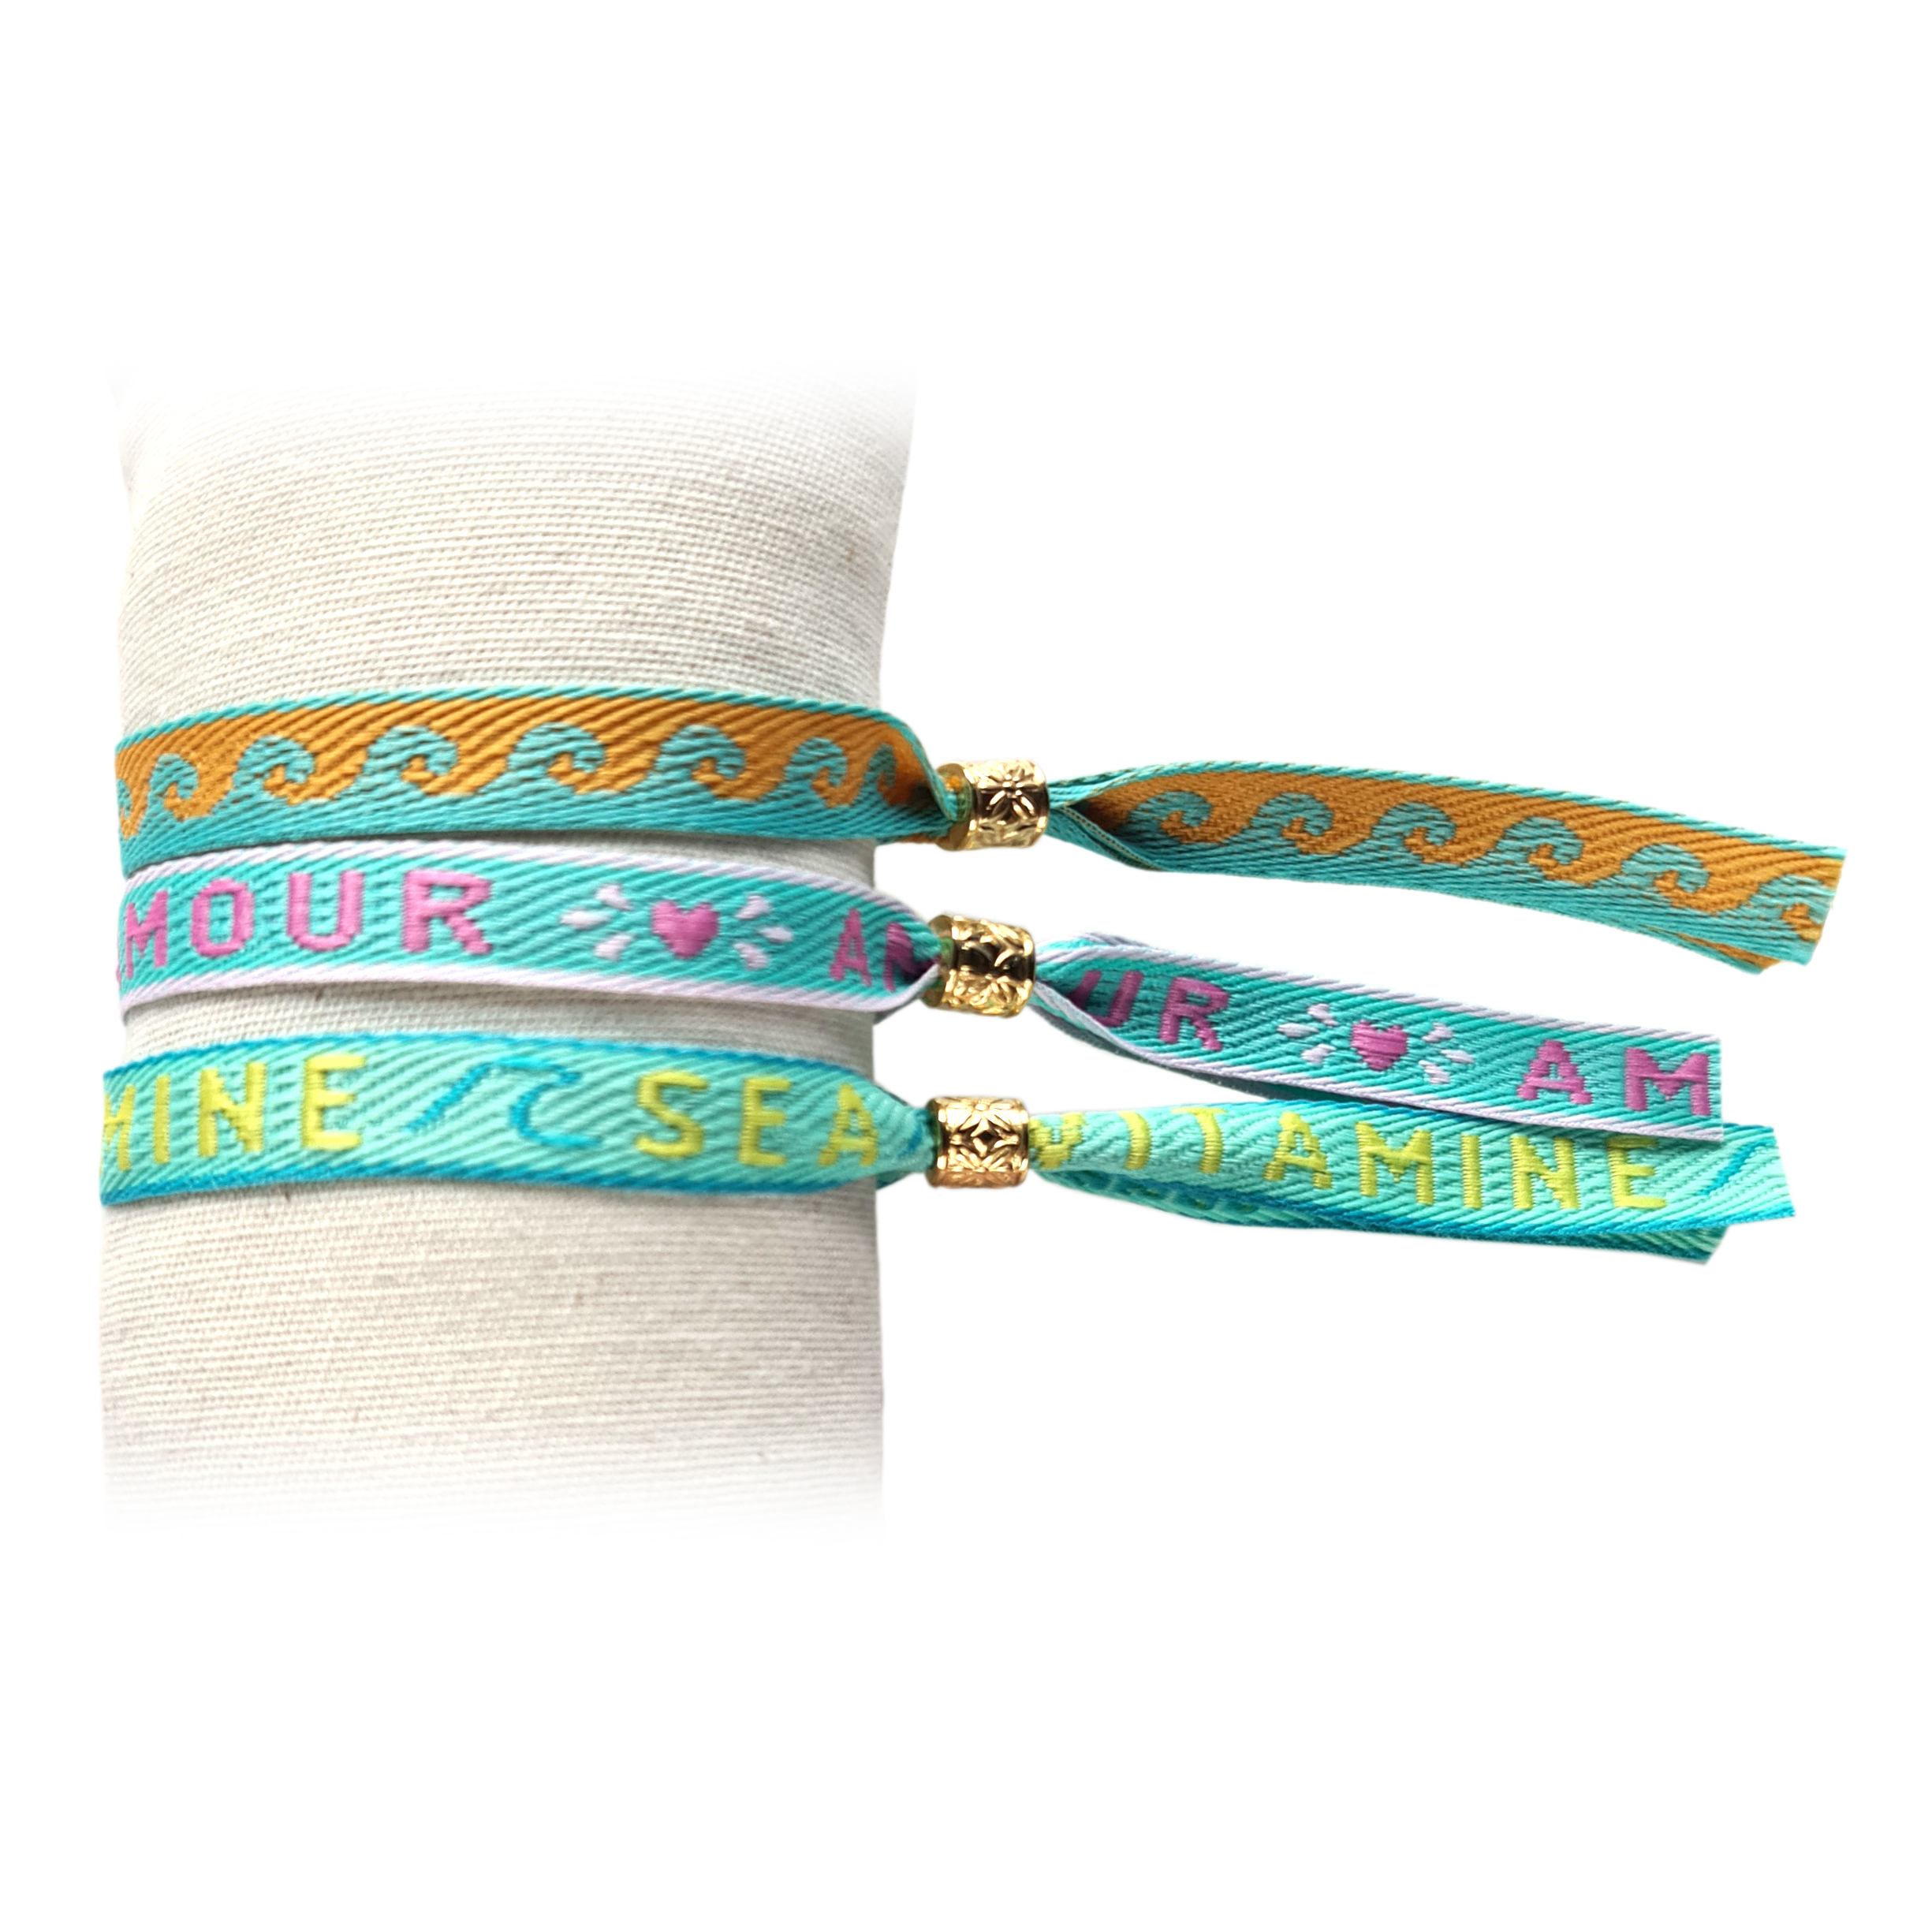 Principessa set van 3 trendy Festival lint armbandjes met tekstlint – Tekst: Waves, Amour, Vitamine Sea – Kleur: Turquoise, Oranje, Roze, Geel